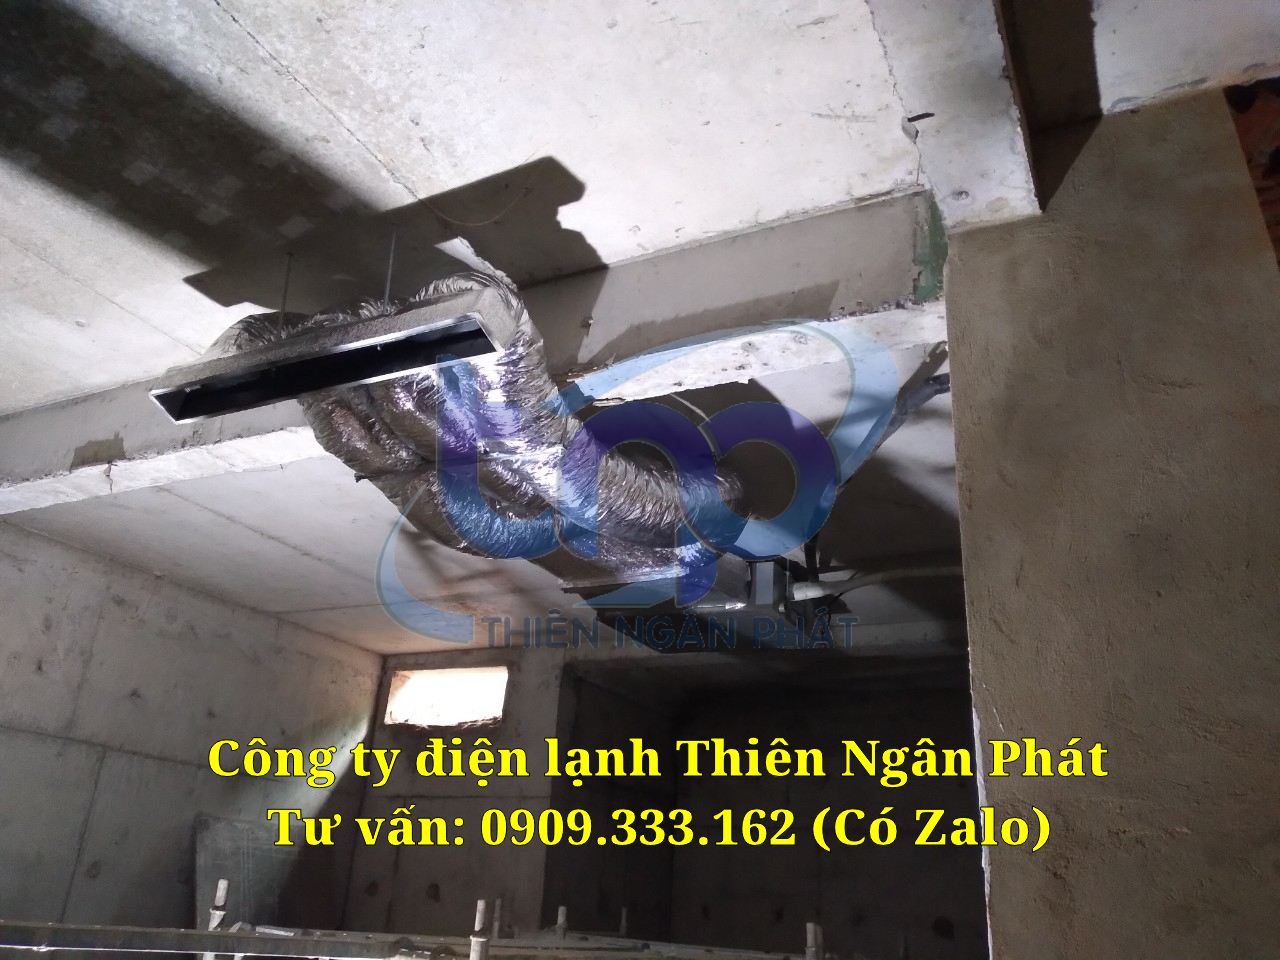 Giá máy lạnh âm trần nối ống gió Mitsubishi Heavy tại Thiên Ngân Phát Dieu-hoa-am-tran-noi-ong-gio-dang-thi-cong